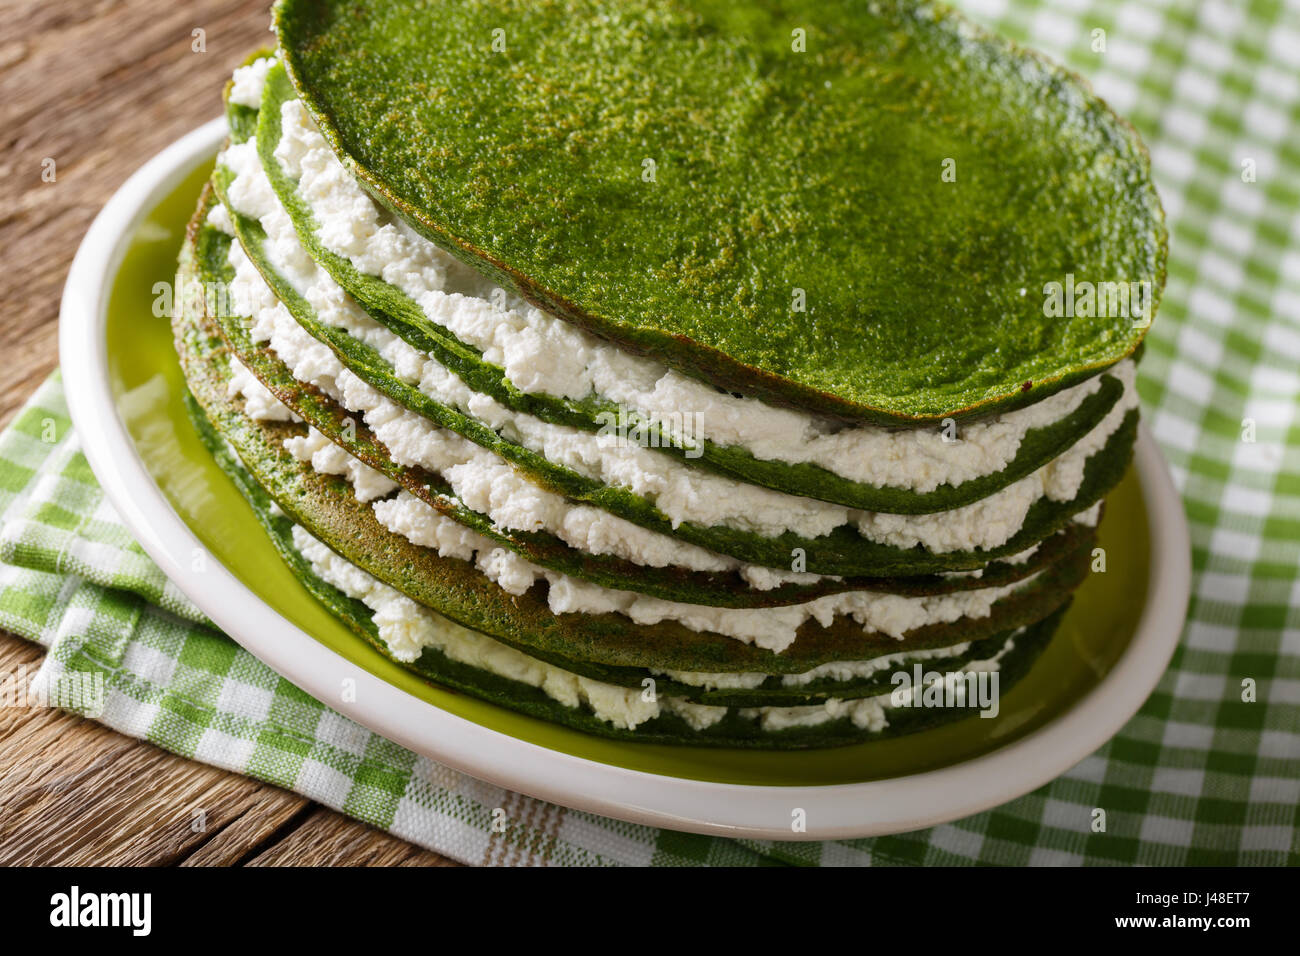 Snack torta fatta di spinaci crepes con ricotta close-up su una piastra orizzontale. Foto Stock